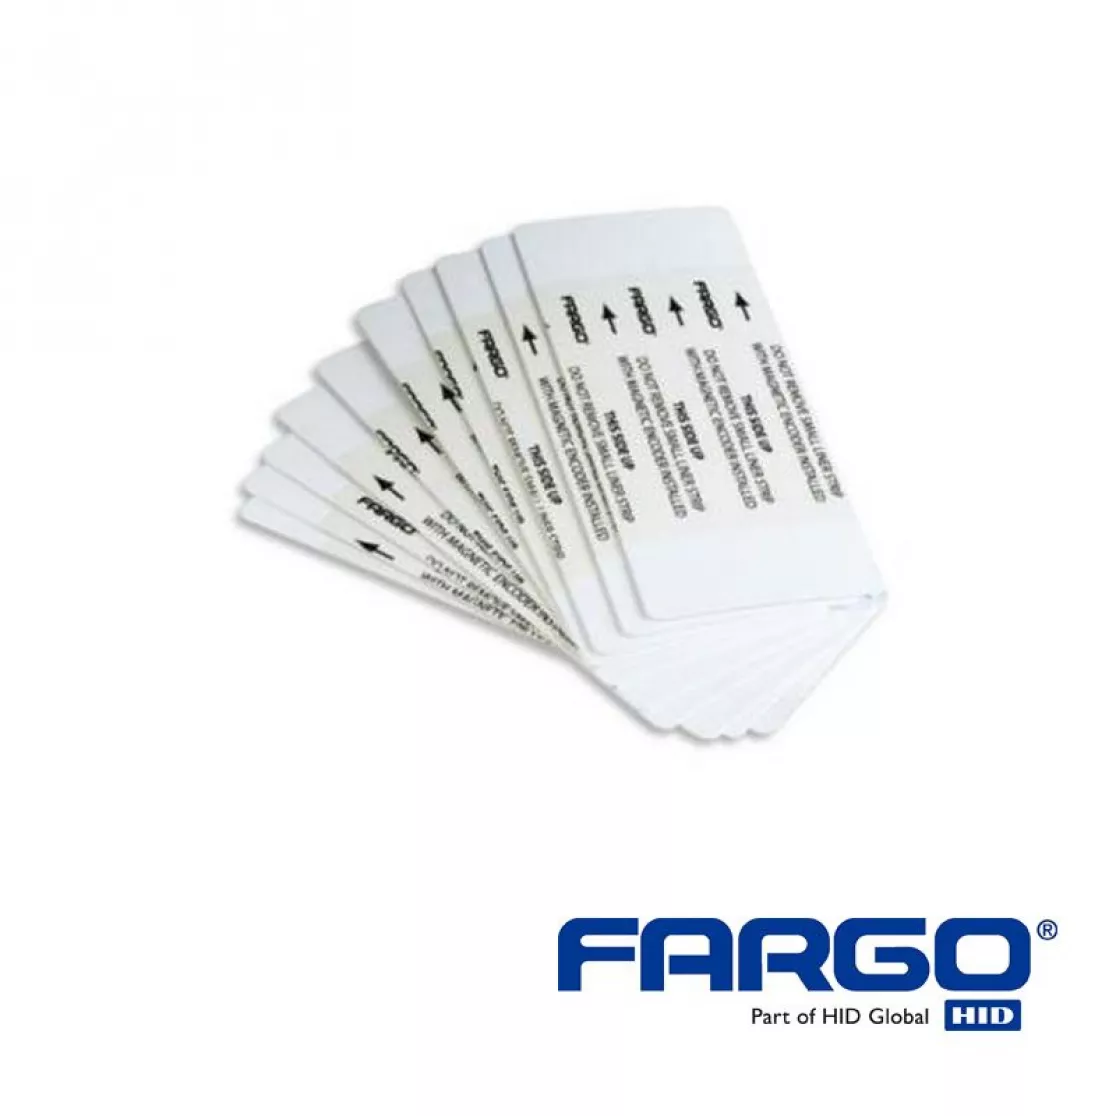 Iso-Propyl Reinigungskarten beidseitig für HID Fargo DTC4500e Kartendrucker